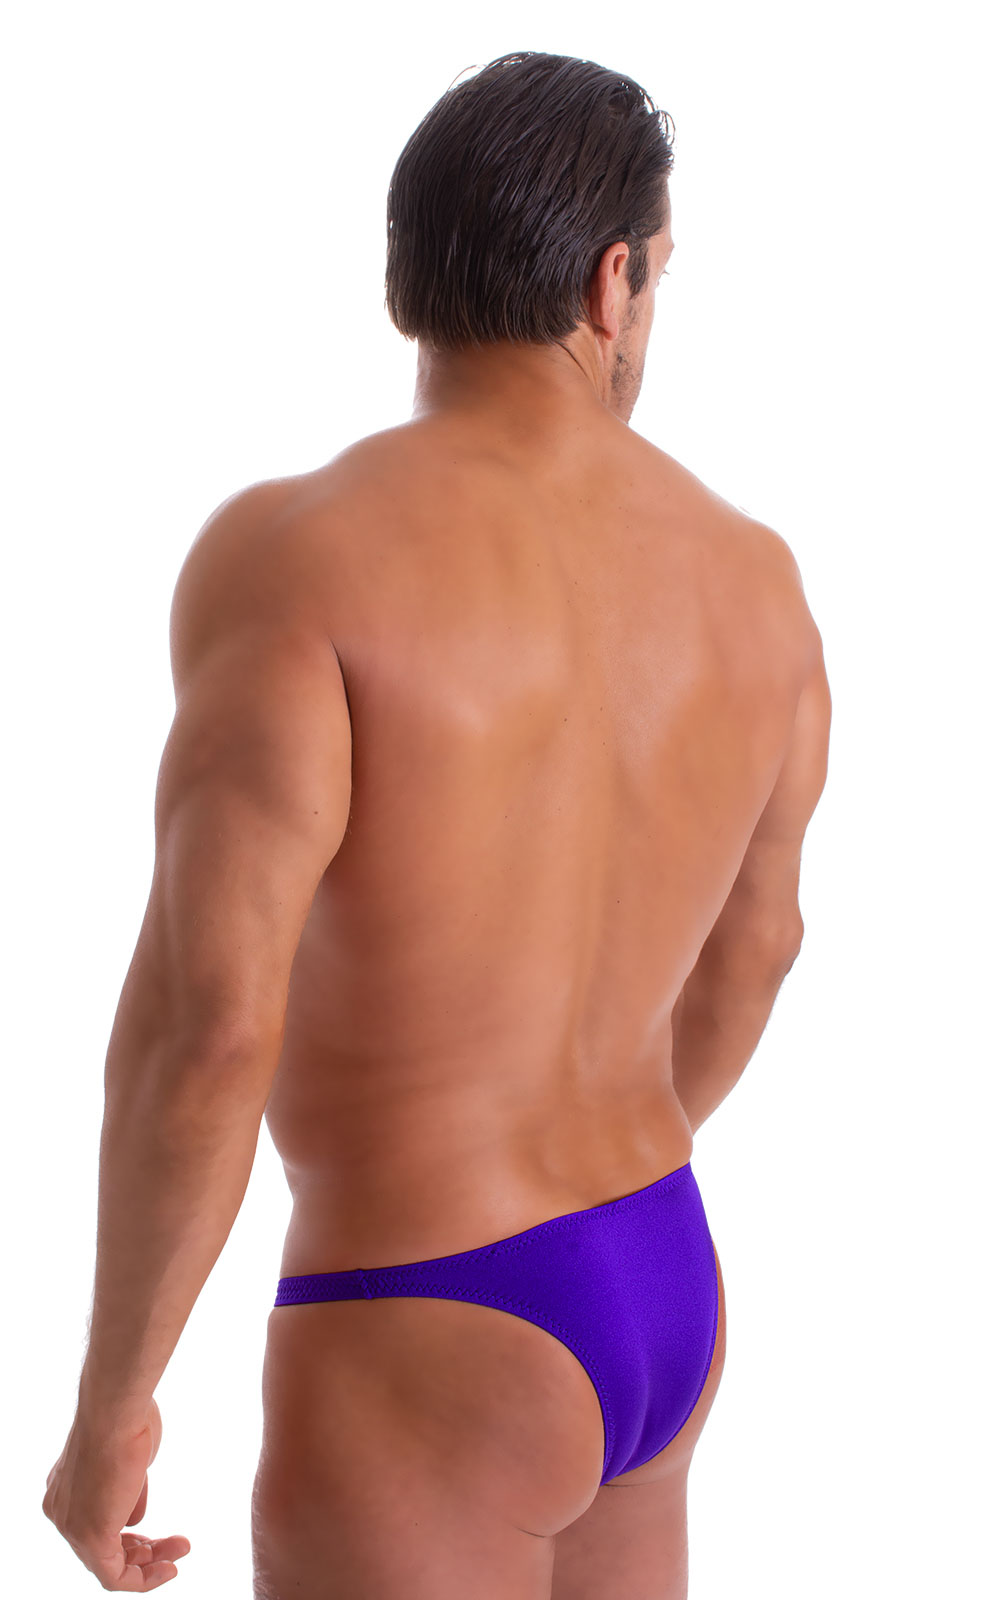 Rio Tanning Bikini Swimsuit in Royal Purple 6